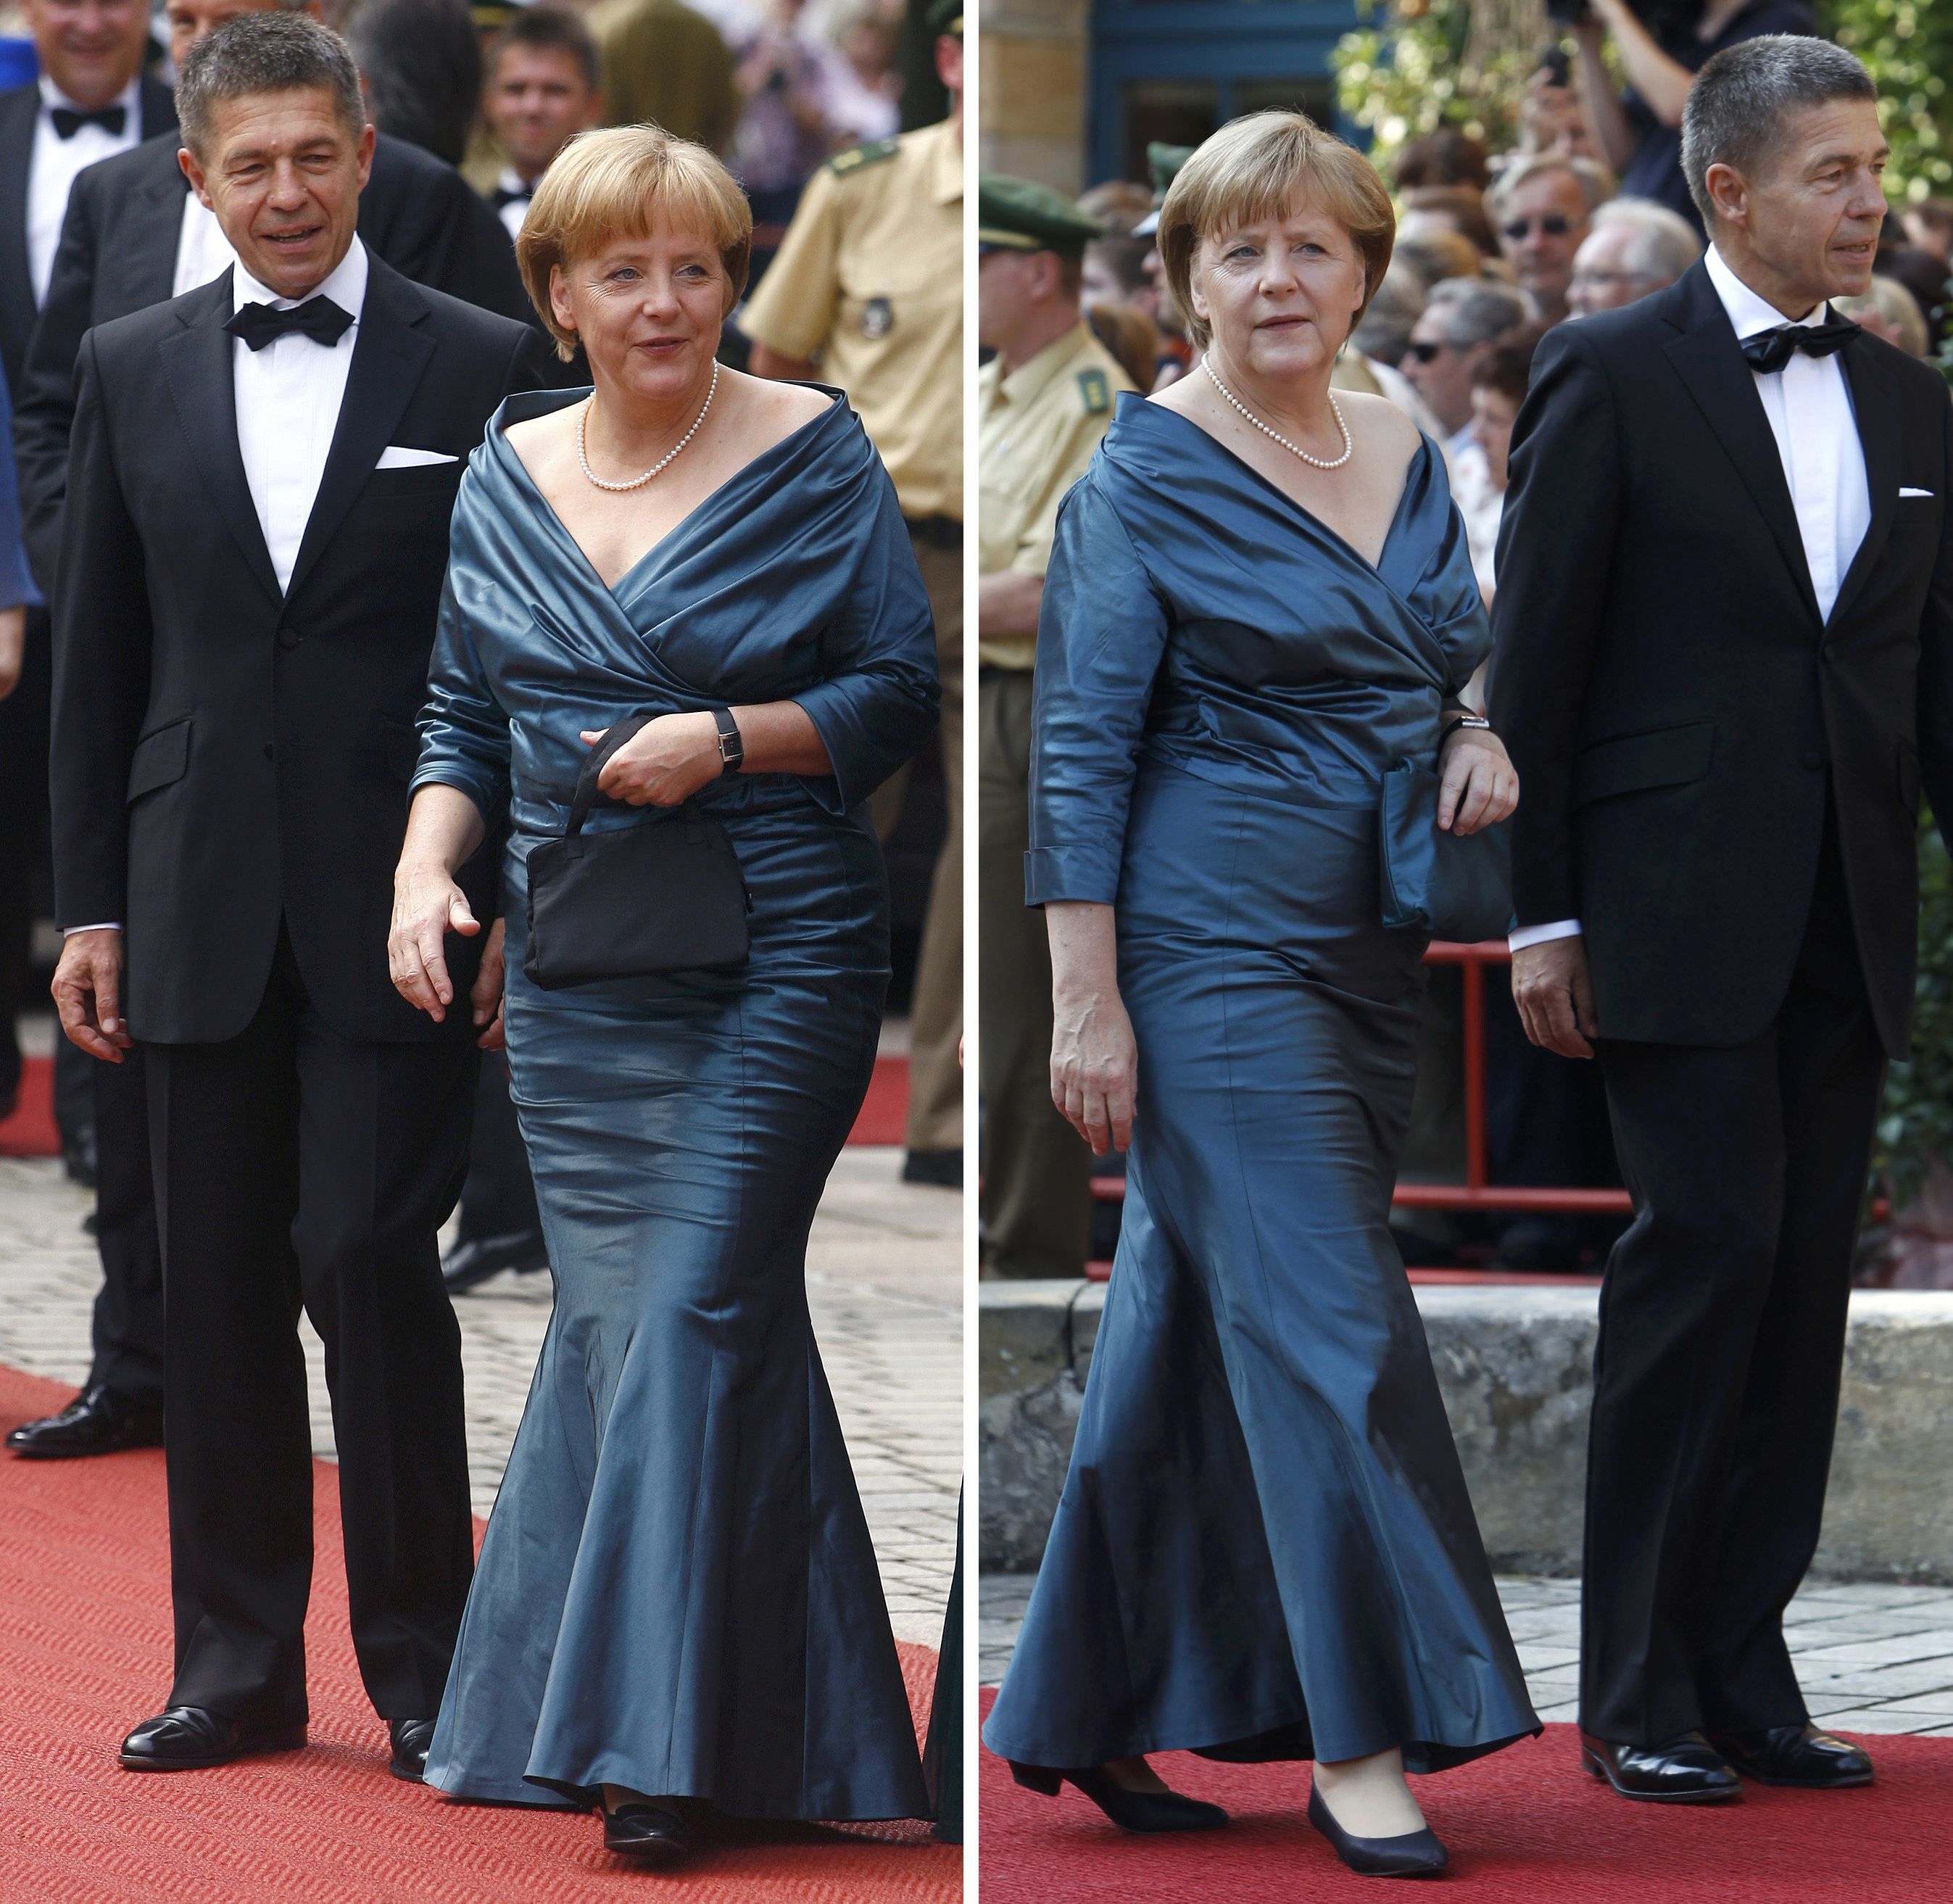 Αποθεώνουν οι Γερμανοί την Μέρκελ γιατί φόρεσε το ίδιο φόρεμα